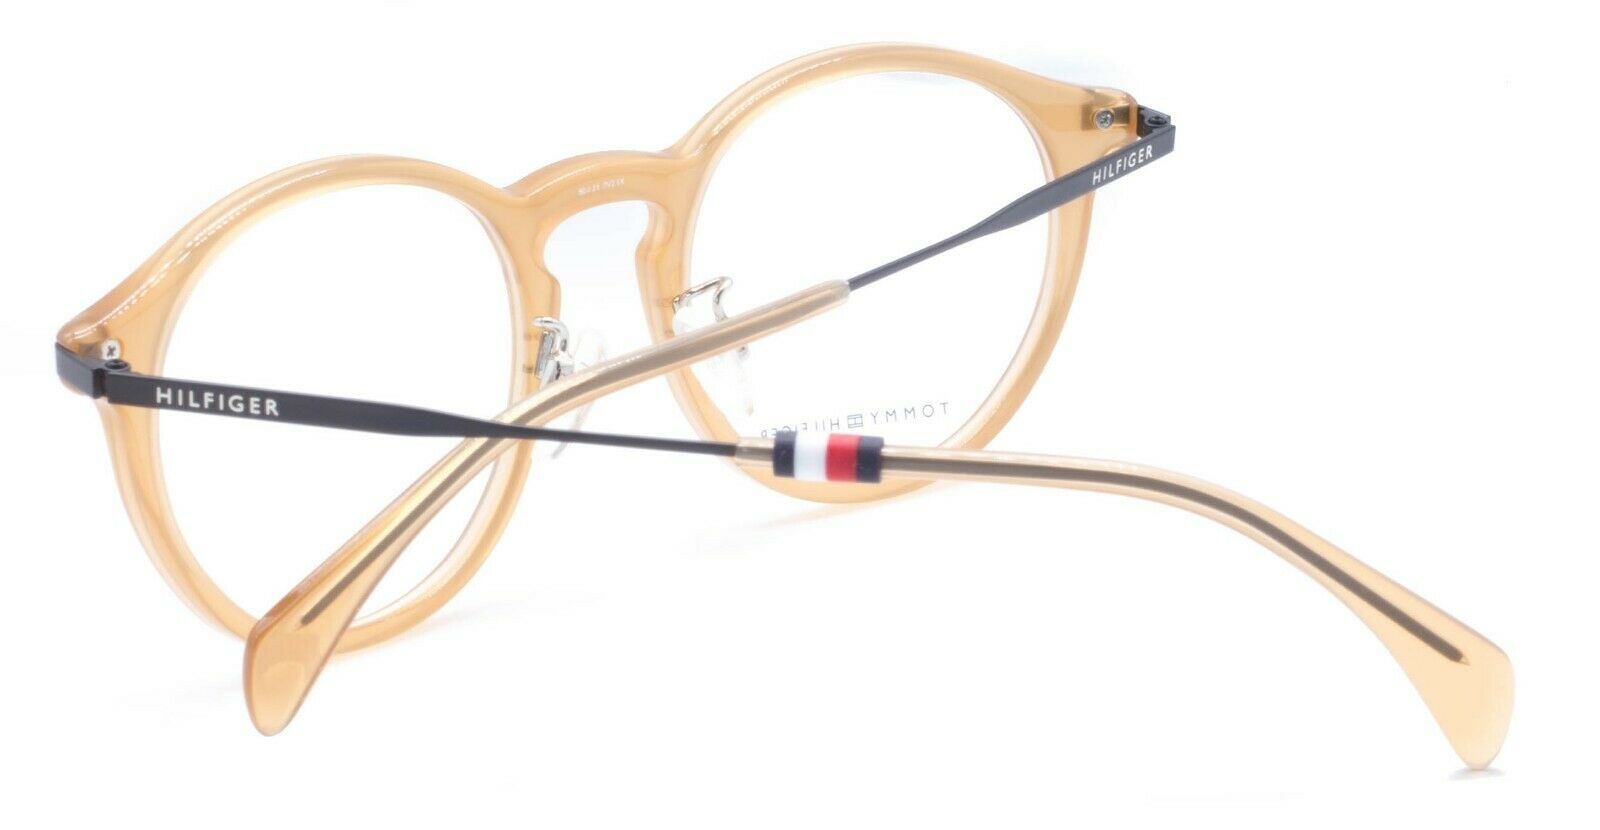 TOMMY HILFIGER TH 1504/F 40G 50mm Eyewear FRAMES Glasses RX Optical Eyeglasses